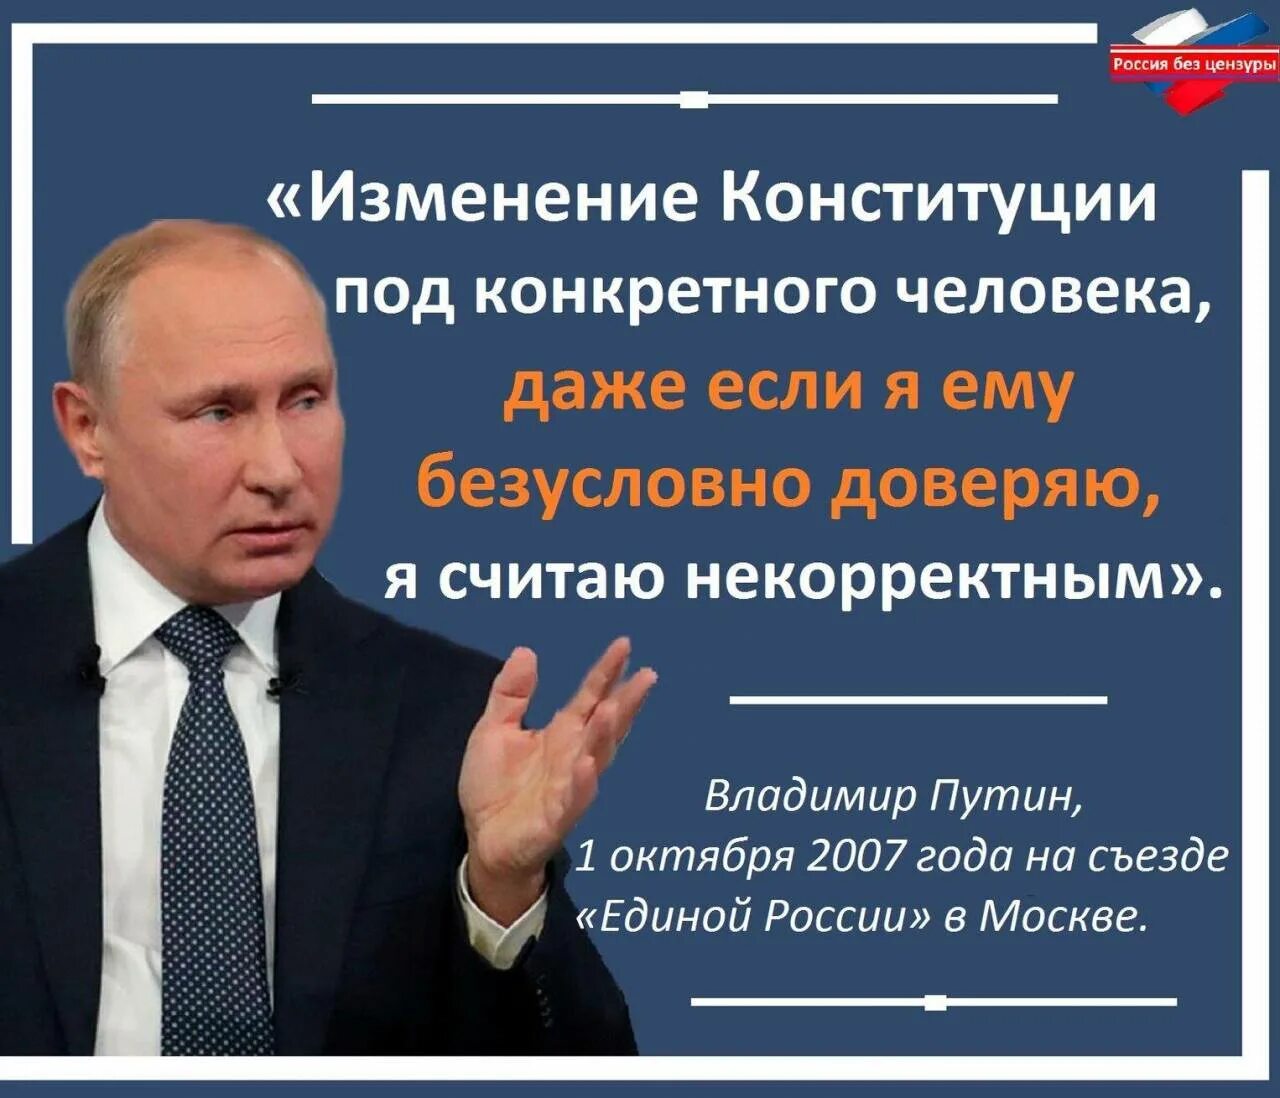 Цитата Путина про Конституцию. Законы против народа. В россии без изменений